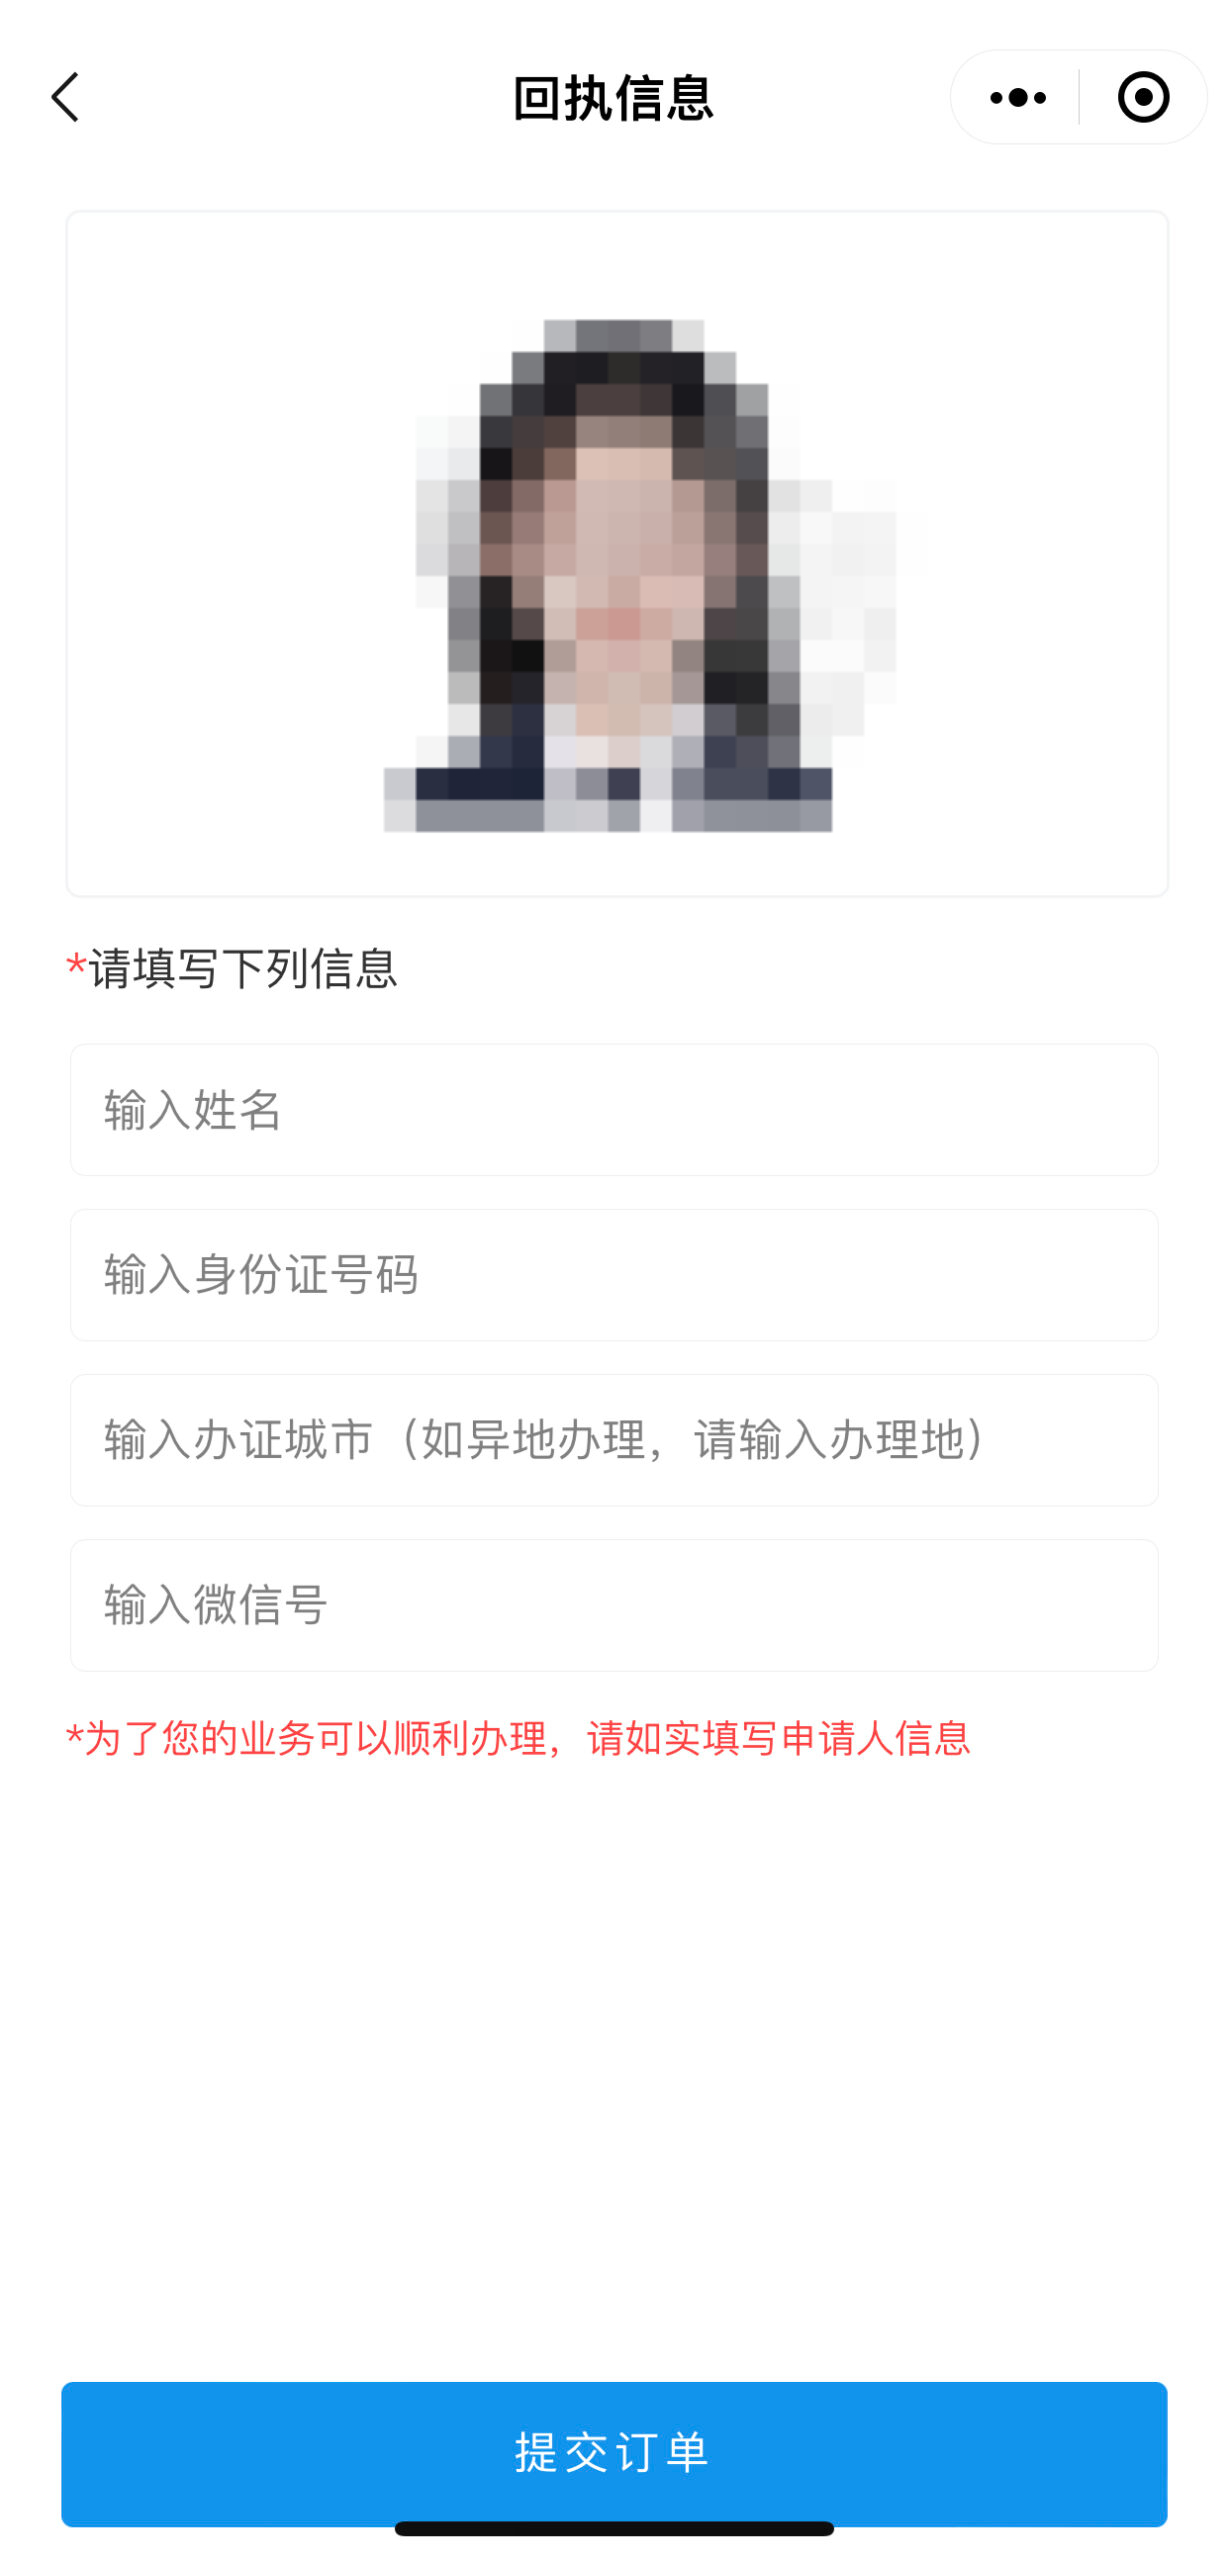 深圳身份证证件照